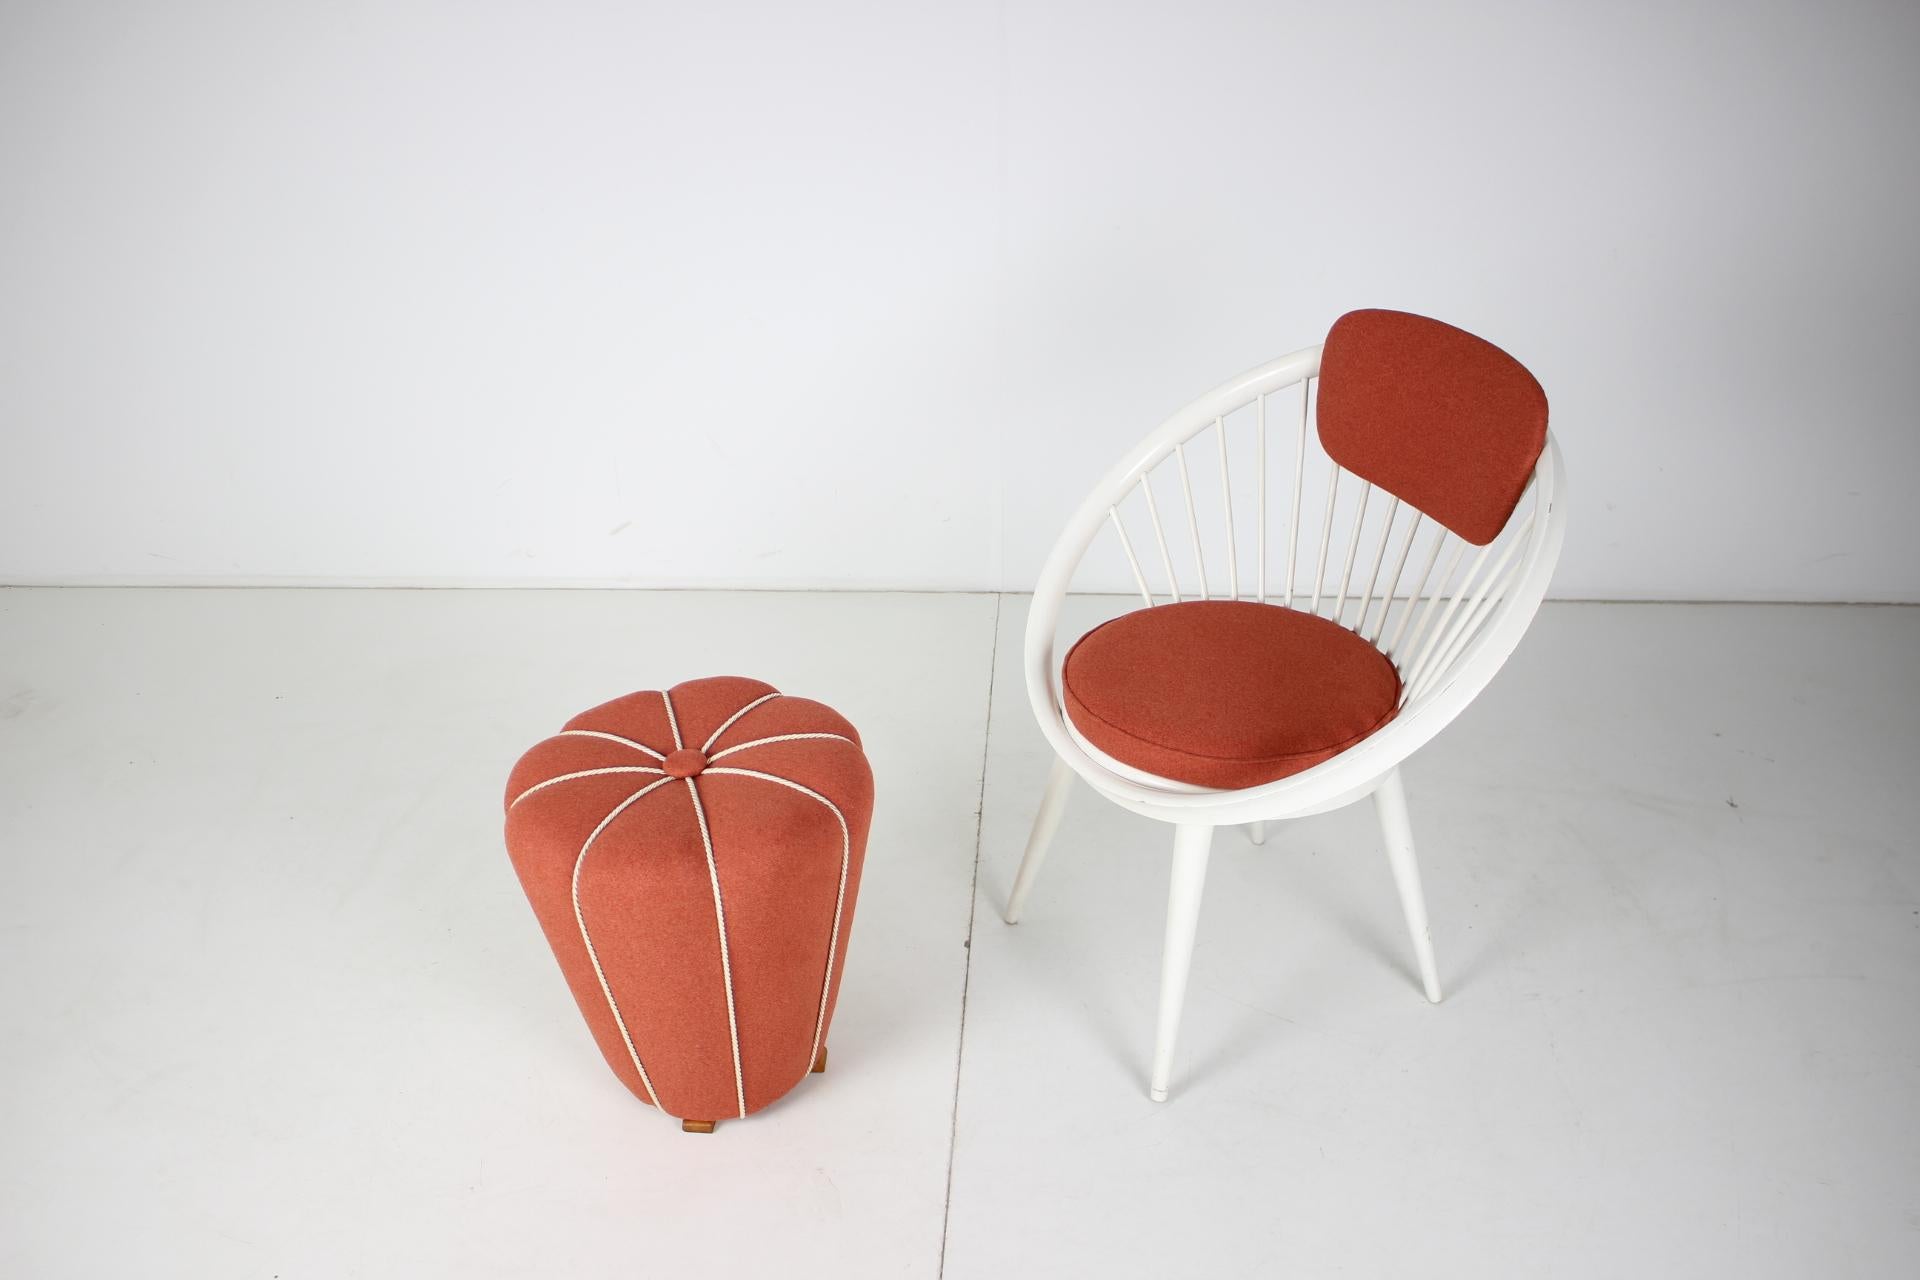 - hergestellt in der Tschechoslowakei (Tabouret), Deutschland (Lounge Chair)
- aus Holz, Stoff
- abmessungen des Tabouret: H 42cm x B 40cm x T 40cm
- neue Polstermöbel
- guter, ursprünglicher Zustand.